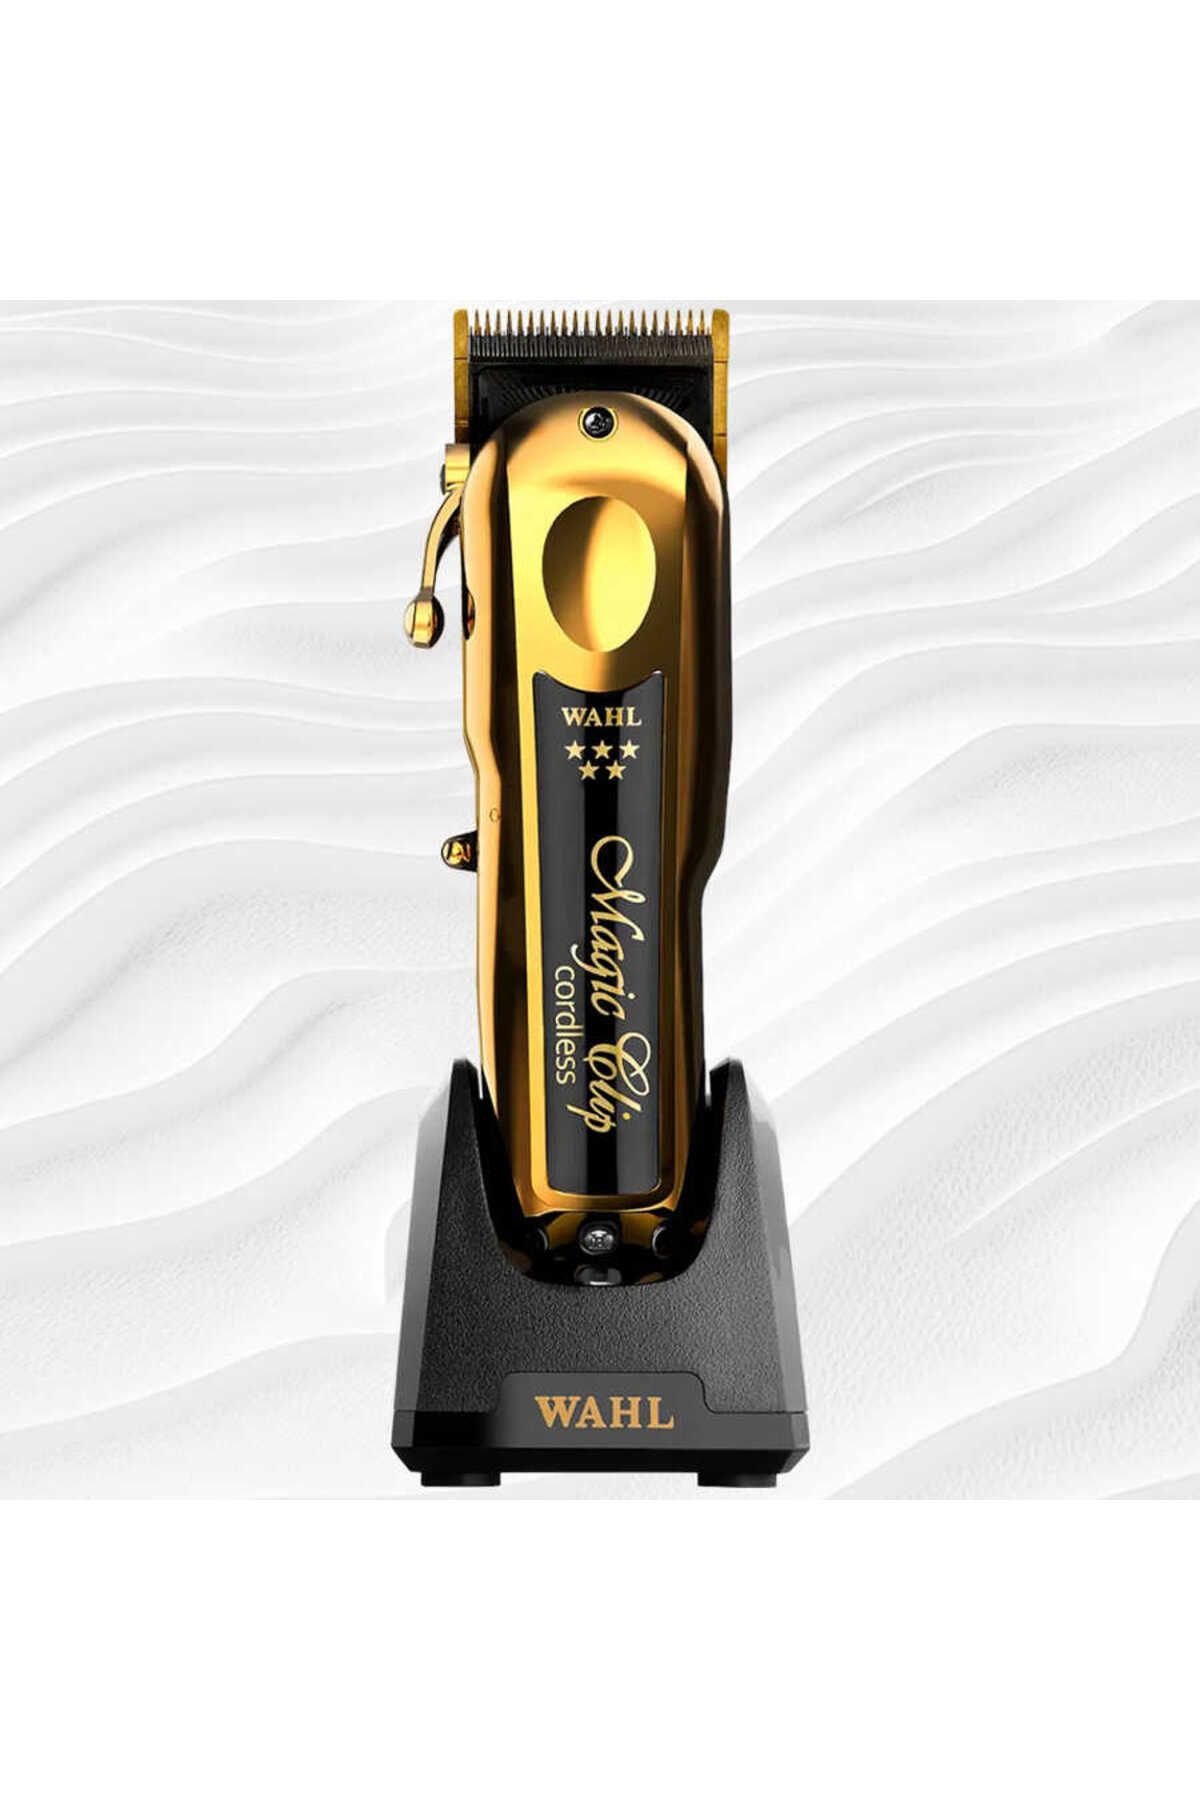 Wahl 8148-716 Magic Clip Gold Cordless Saç Kesme Makinası